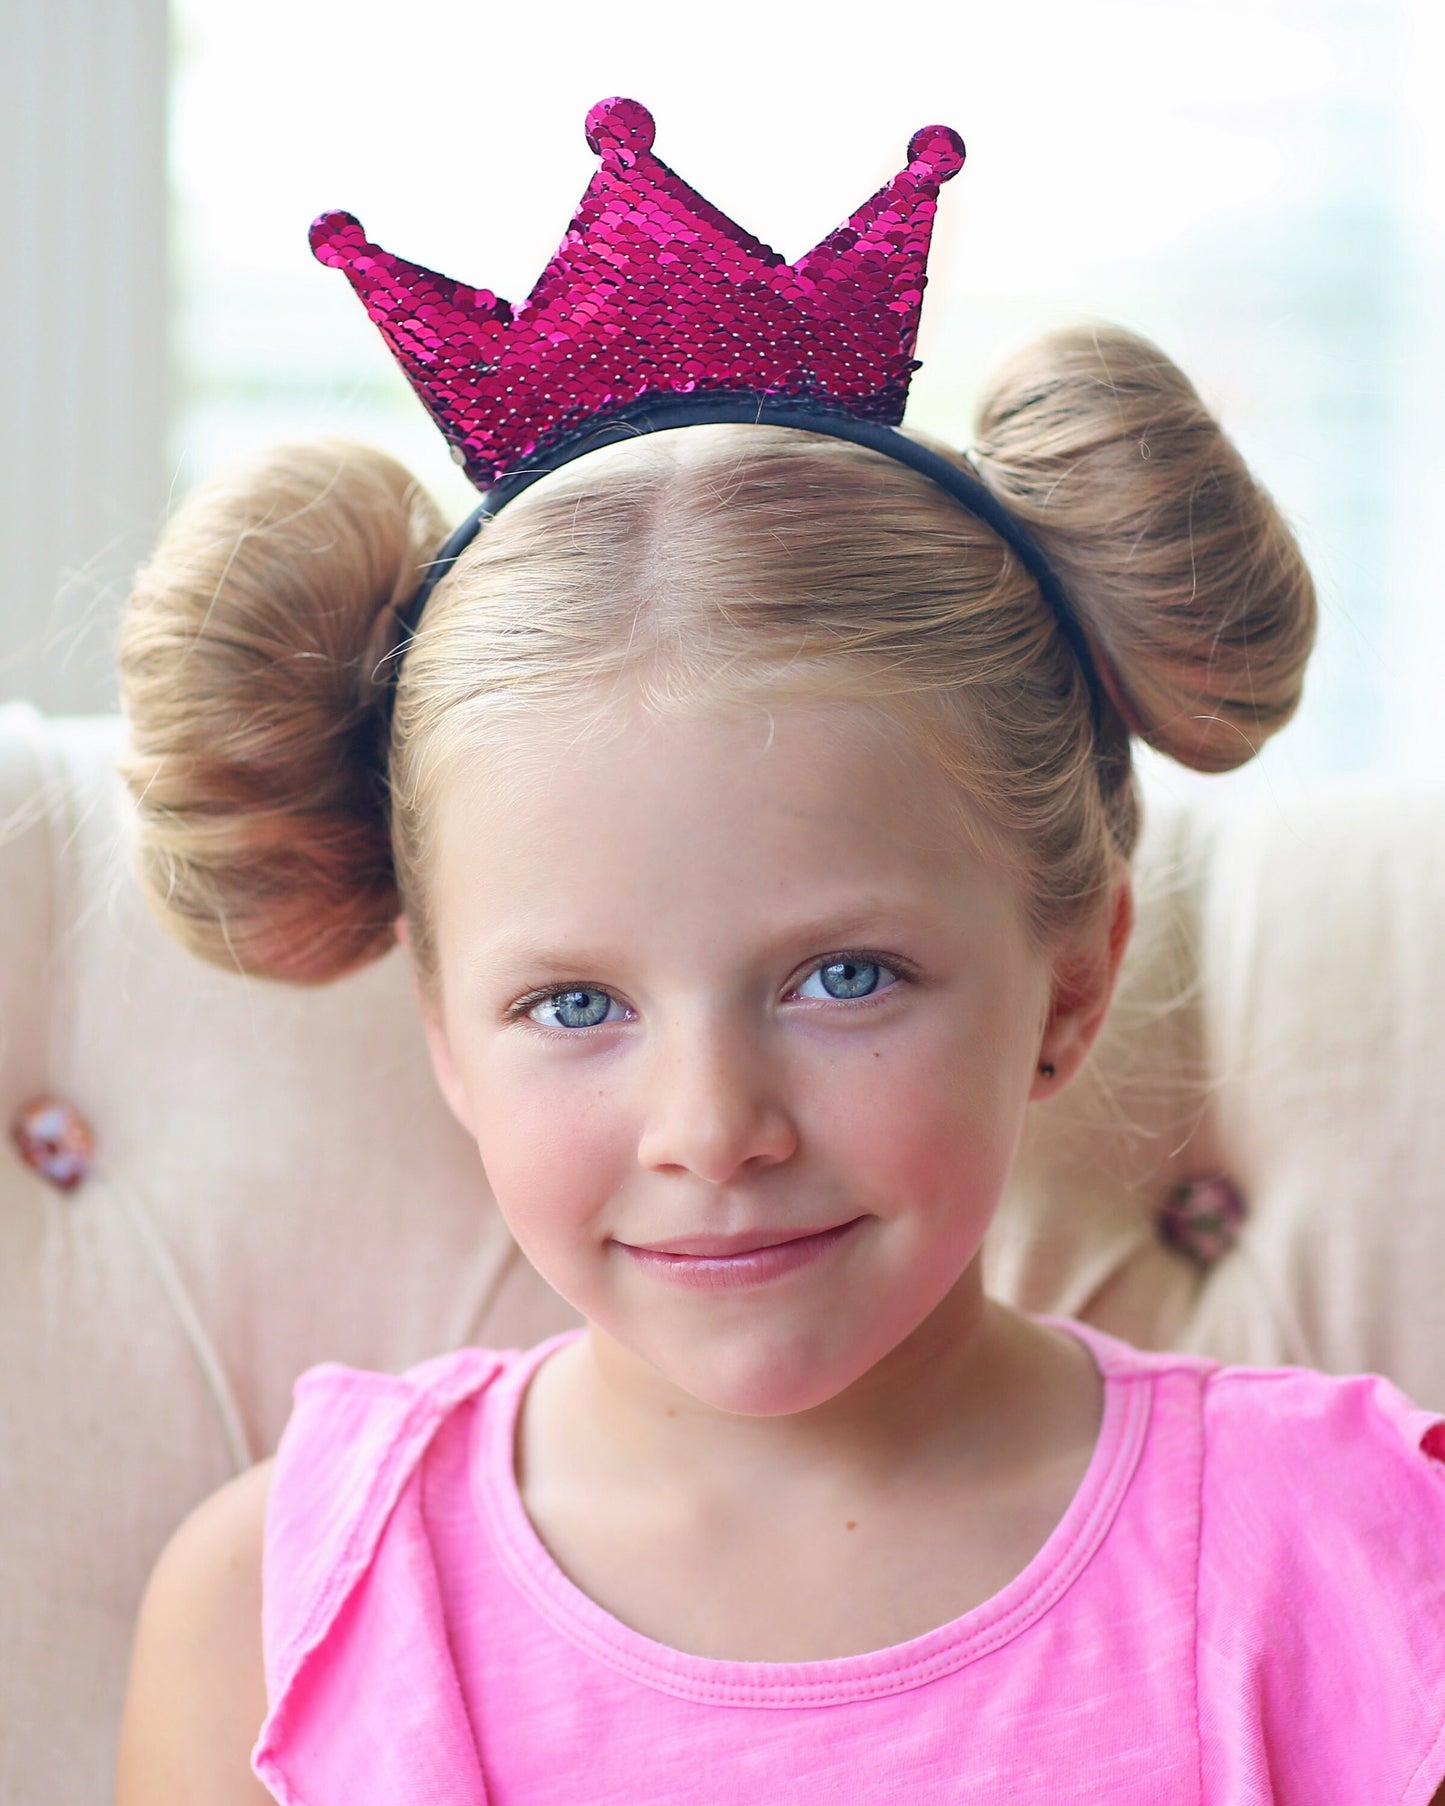 Hot Pink Flip Sequin Crown Headband - Crown Headband, Birthday Crown, crown, birthday, Hot Pink Reversible Sequins, crown headband, headband